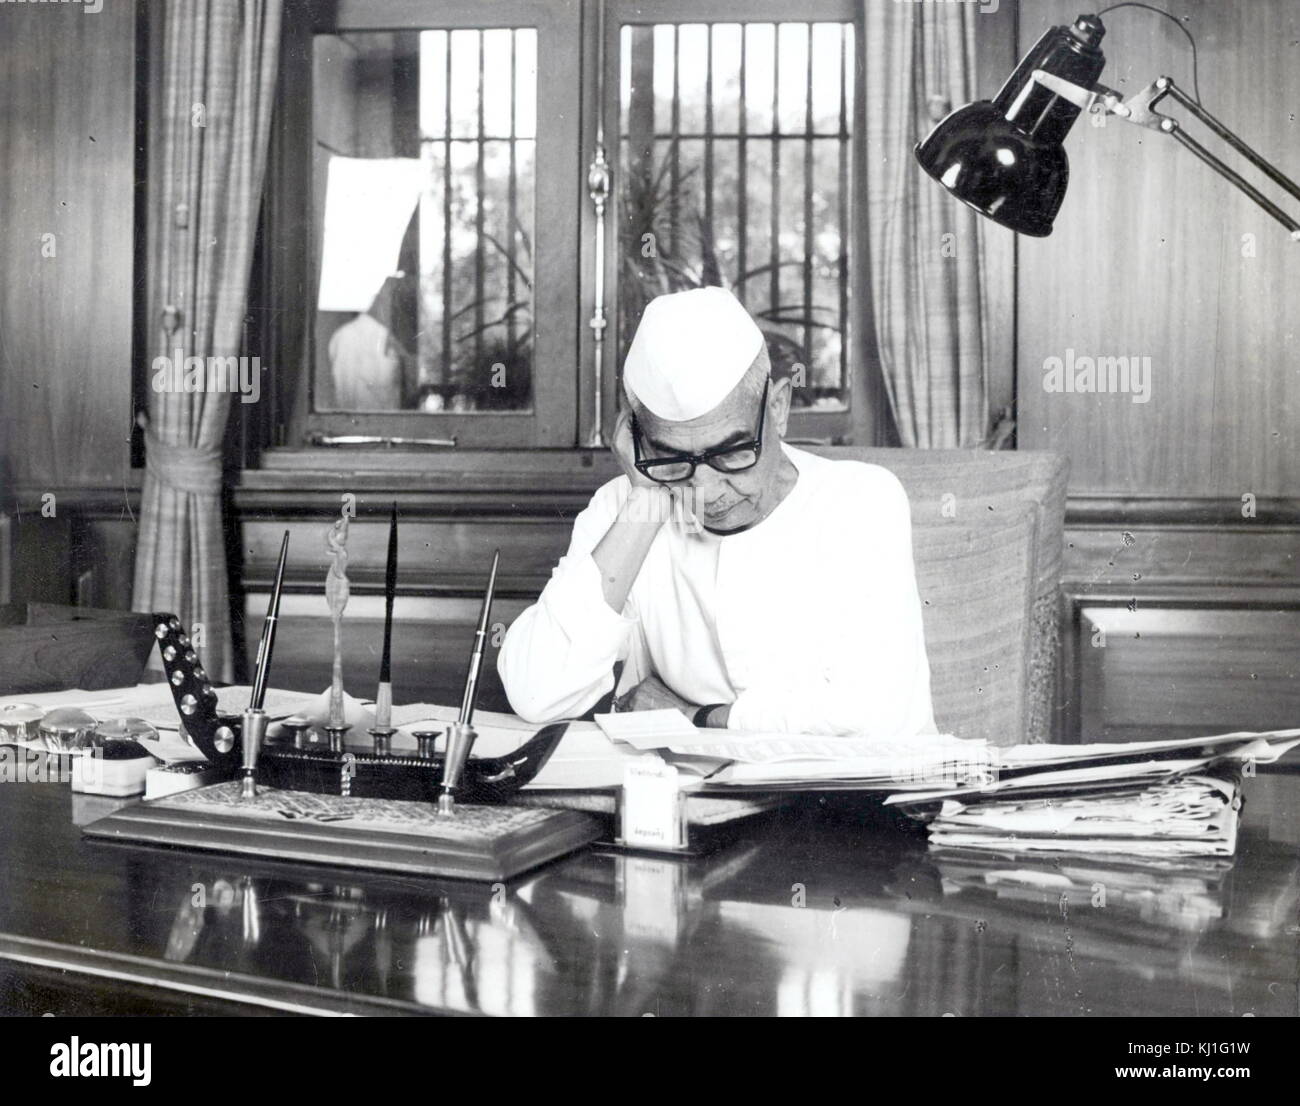 Chaudhary Charan Singh (1902-1987) wurde der Premierminister der Republik Indien, 28, Juli 1979 bis zum 14. Januar 1980. Stockfoto